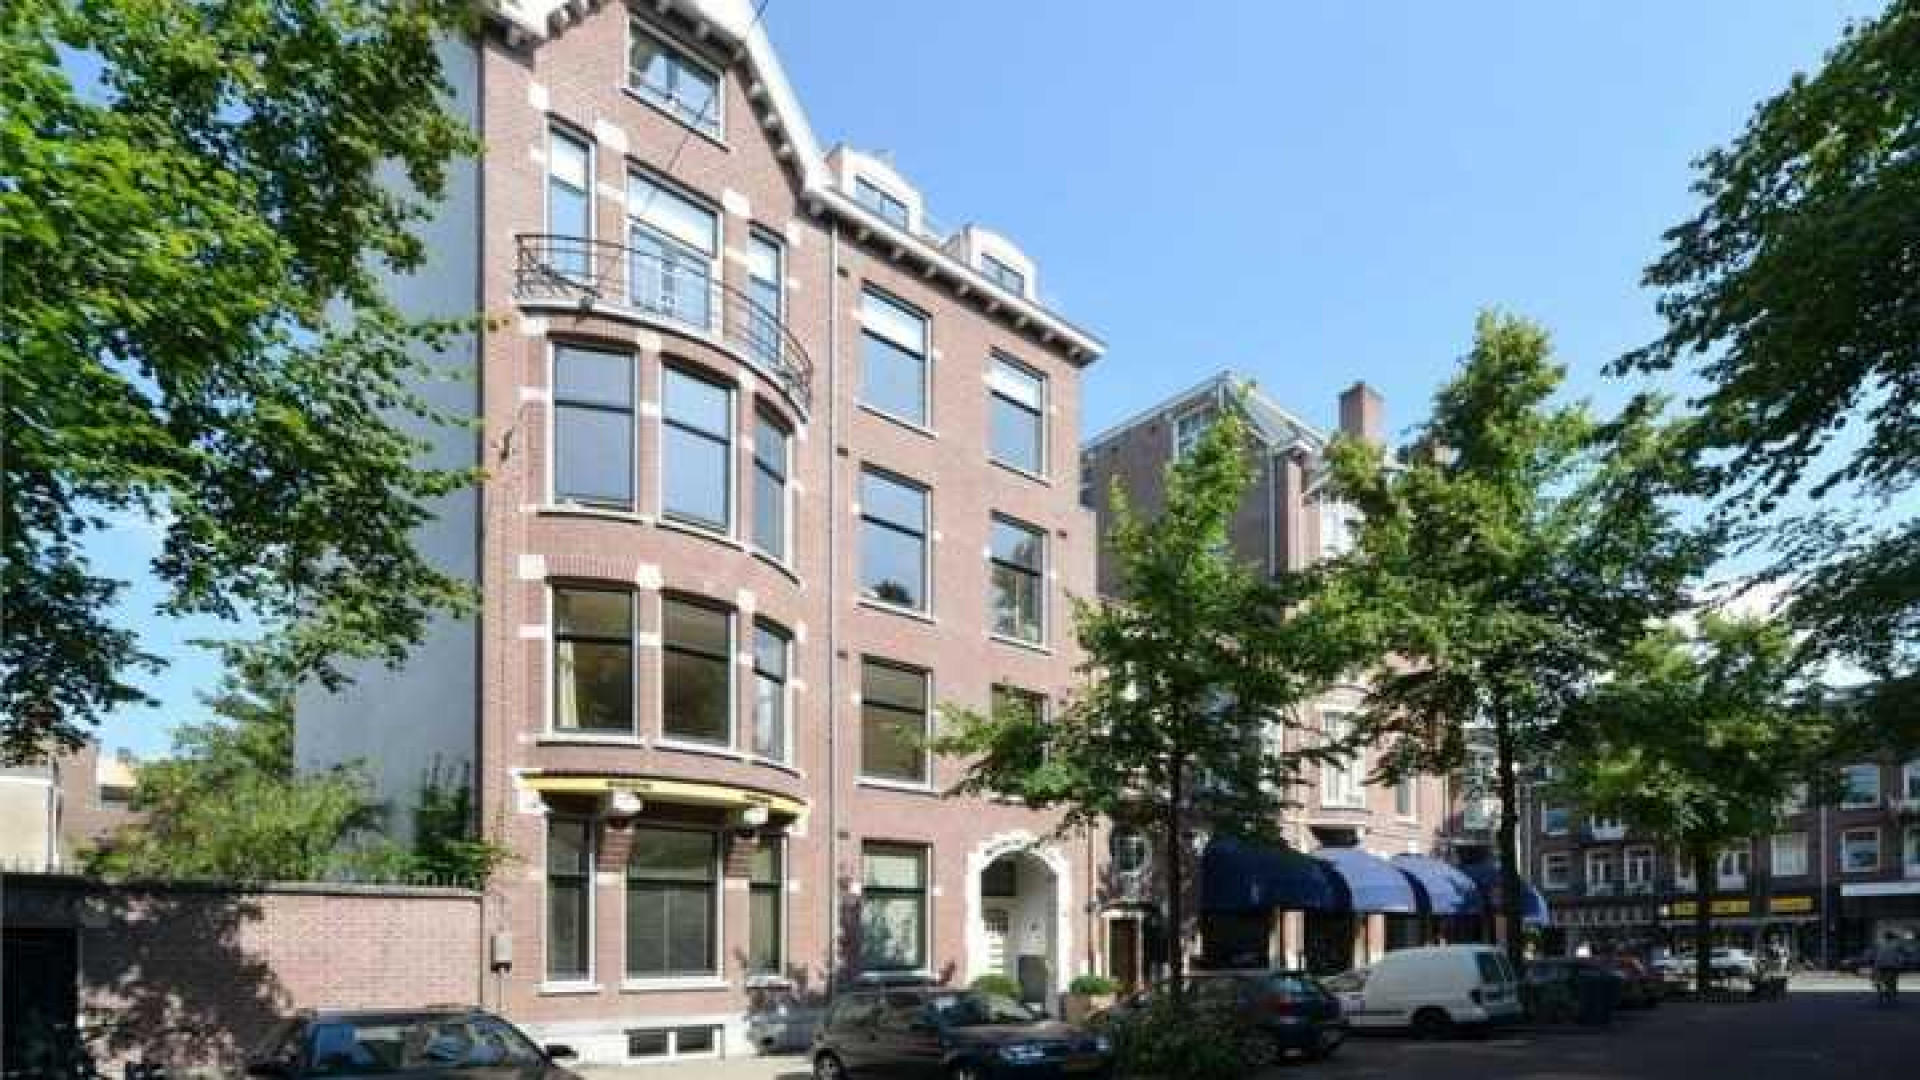 Frank Rijkaard zoekt huurder voor zijn luxe dubbele bovenhuis. Zie foto's 1